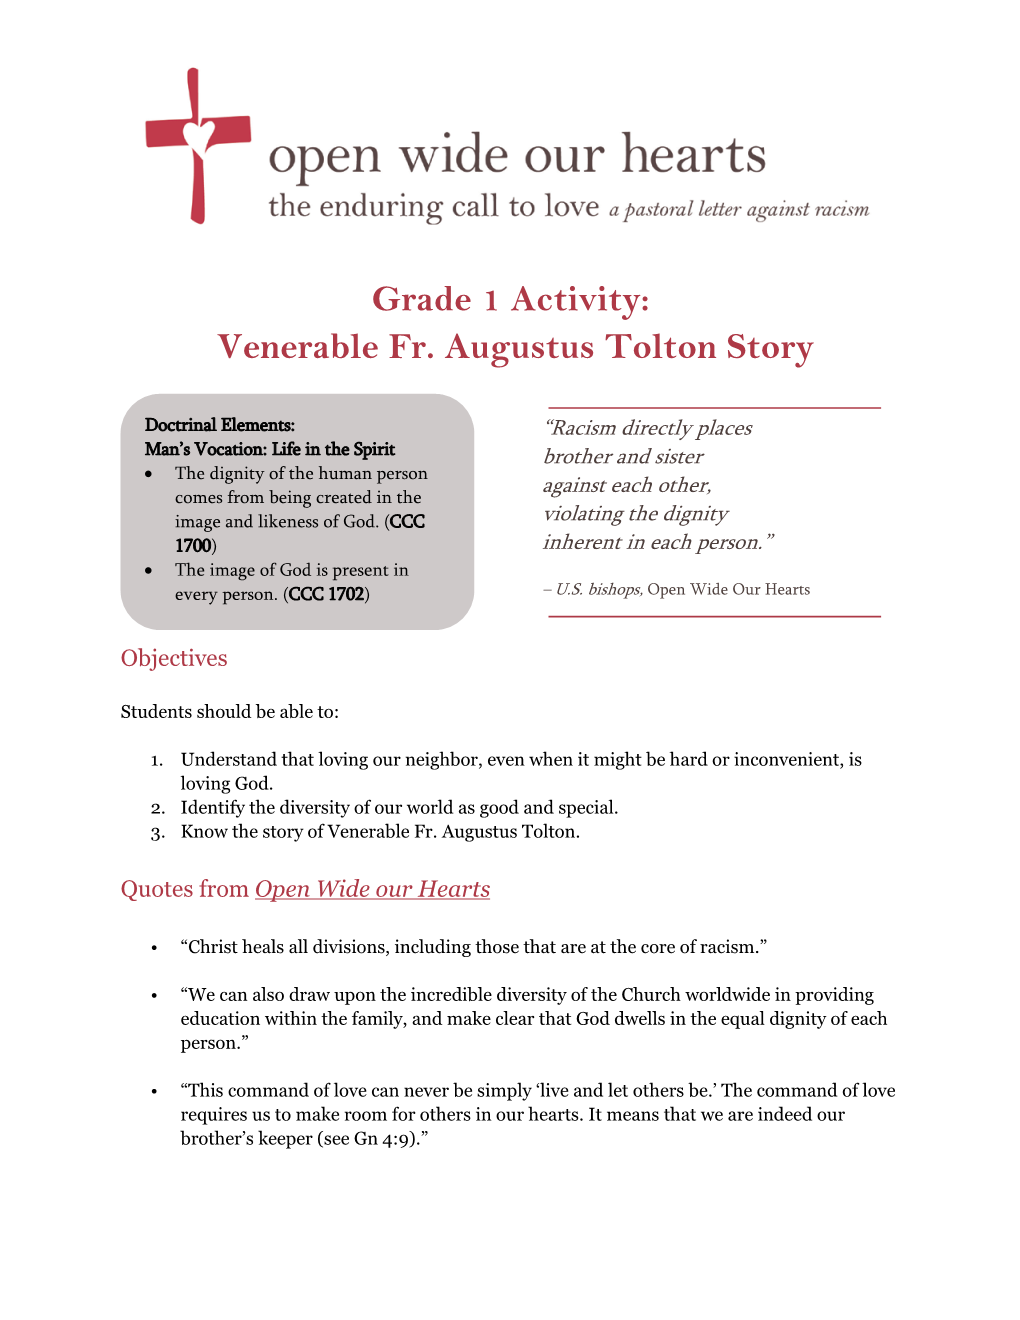 Venerable Fr. Augustus Tolton Story